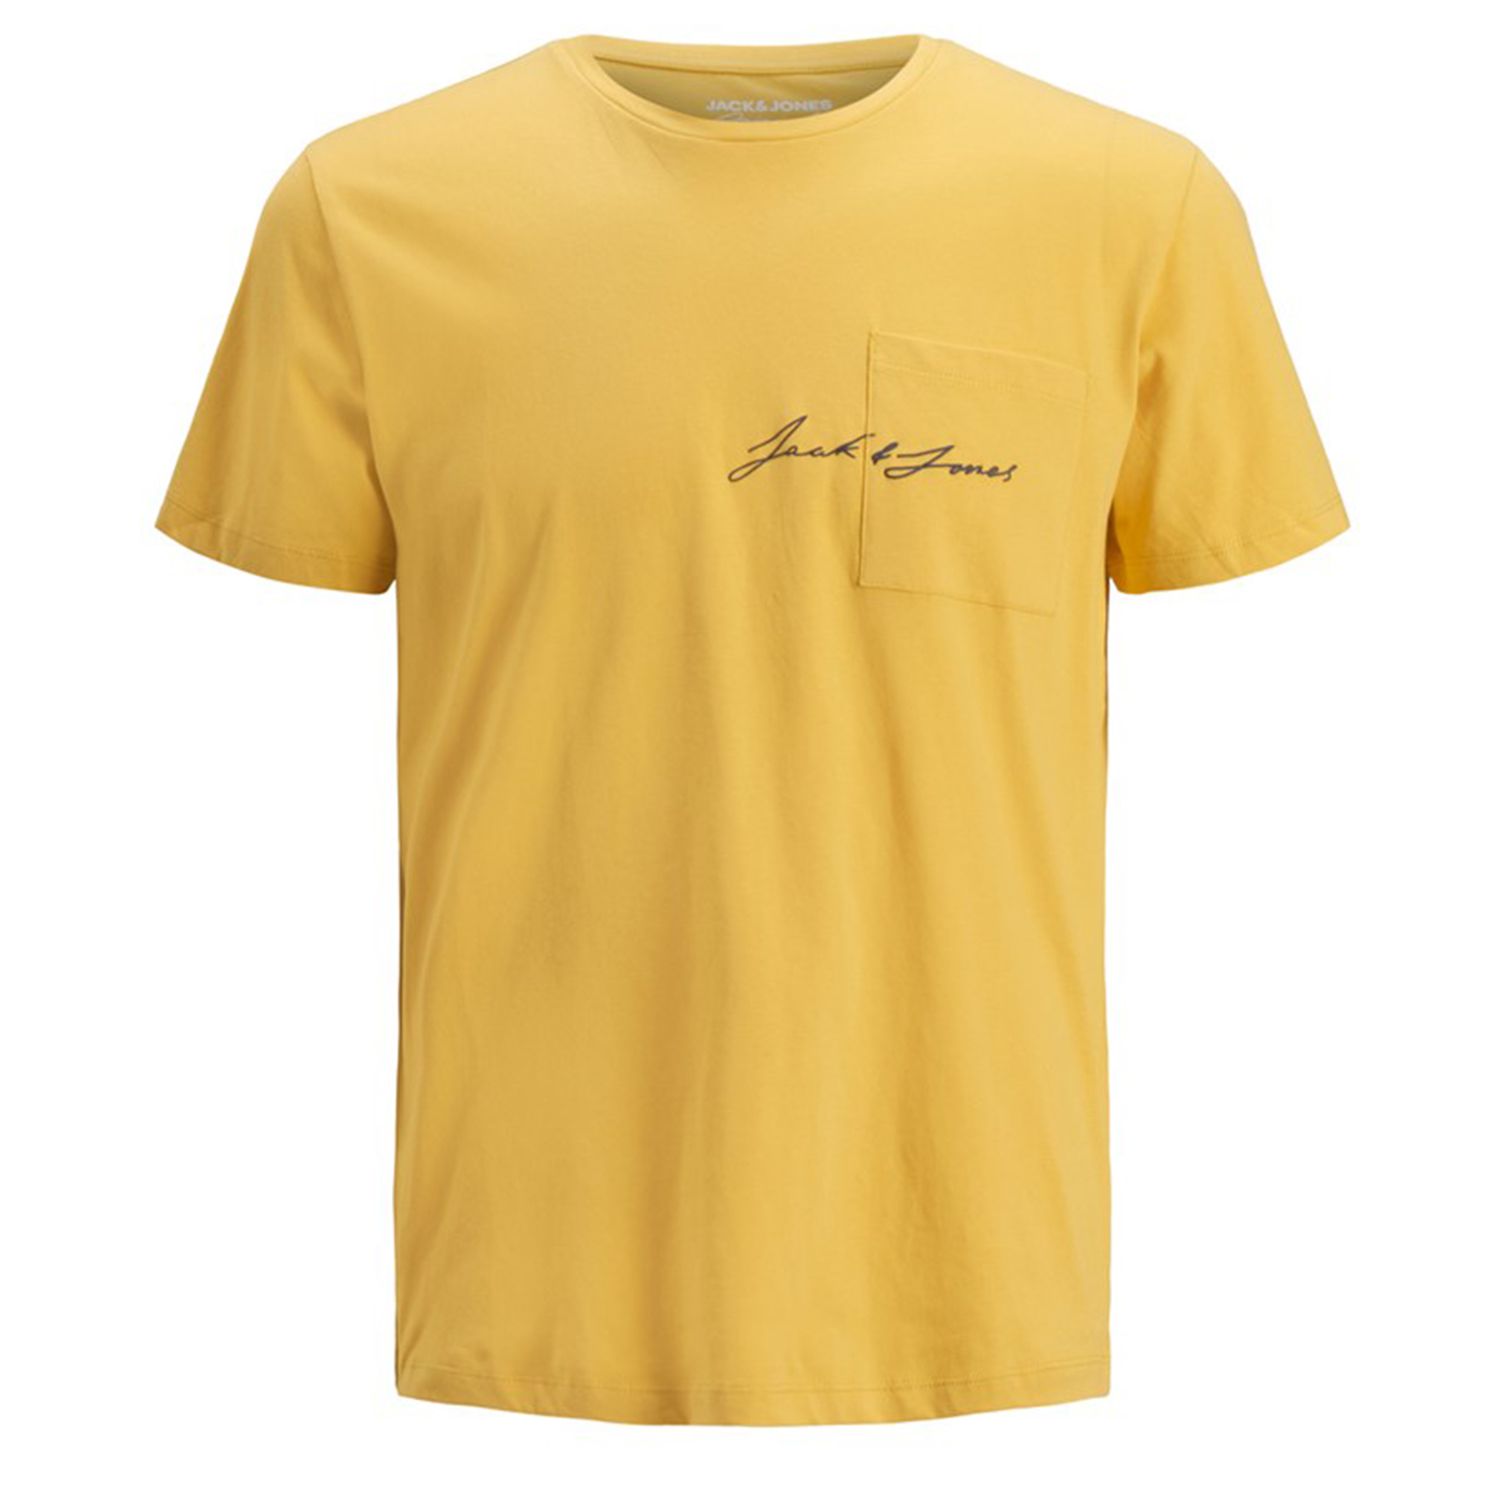 تی شرت آستین کوتاه مردانه جک اند جونز مدل ساده جیب دار کد Olympus12180662 رنگ زرد -  - 1